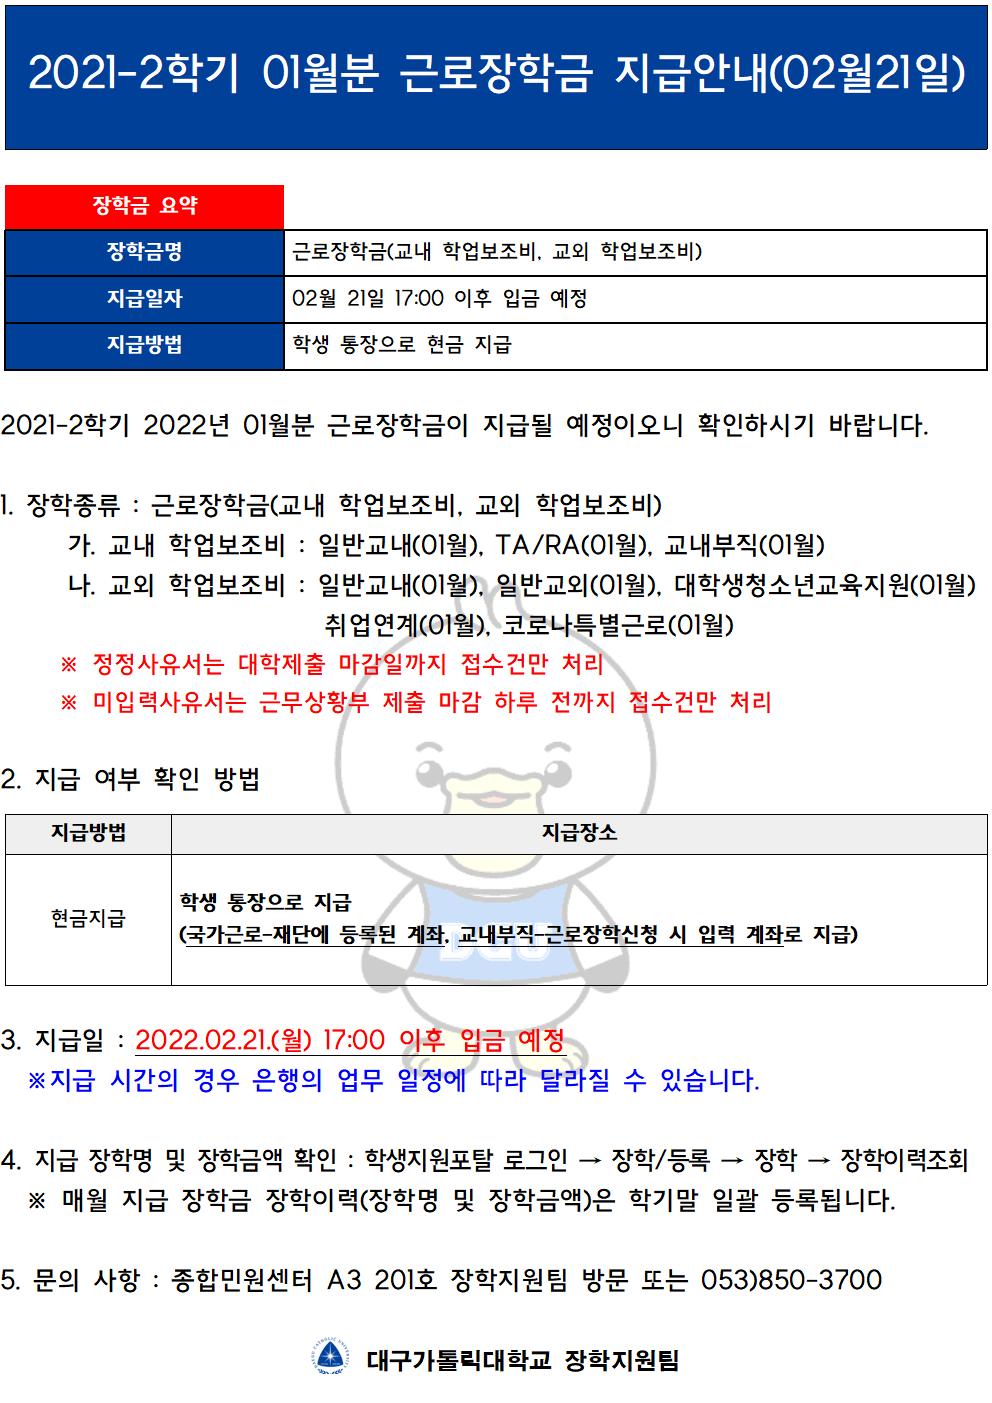 [근로] 2021-2학기 01월분 근로장학금 지급안내(02월21일)